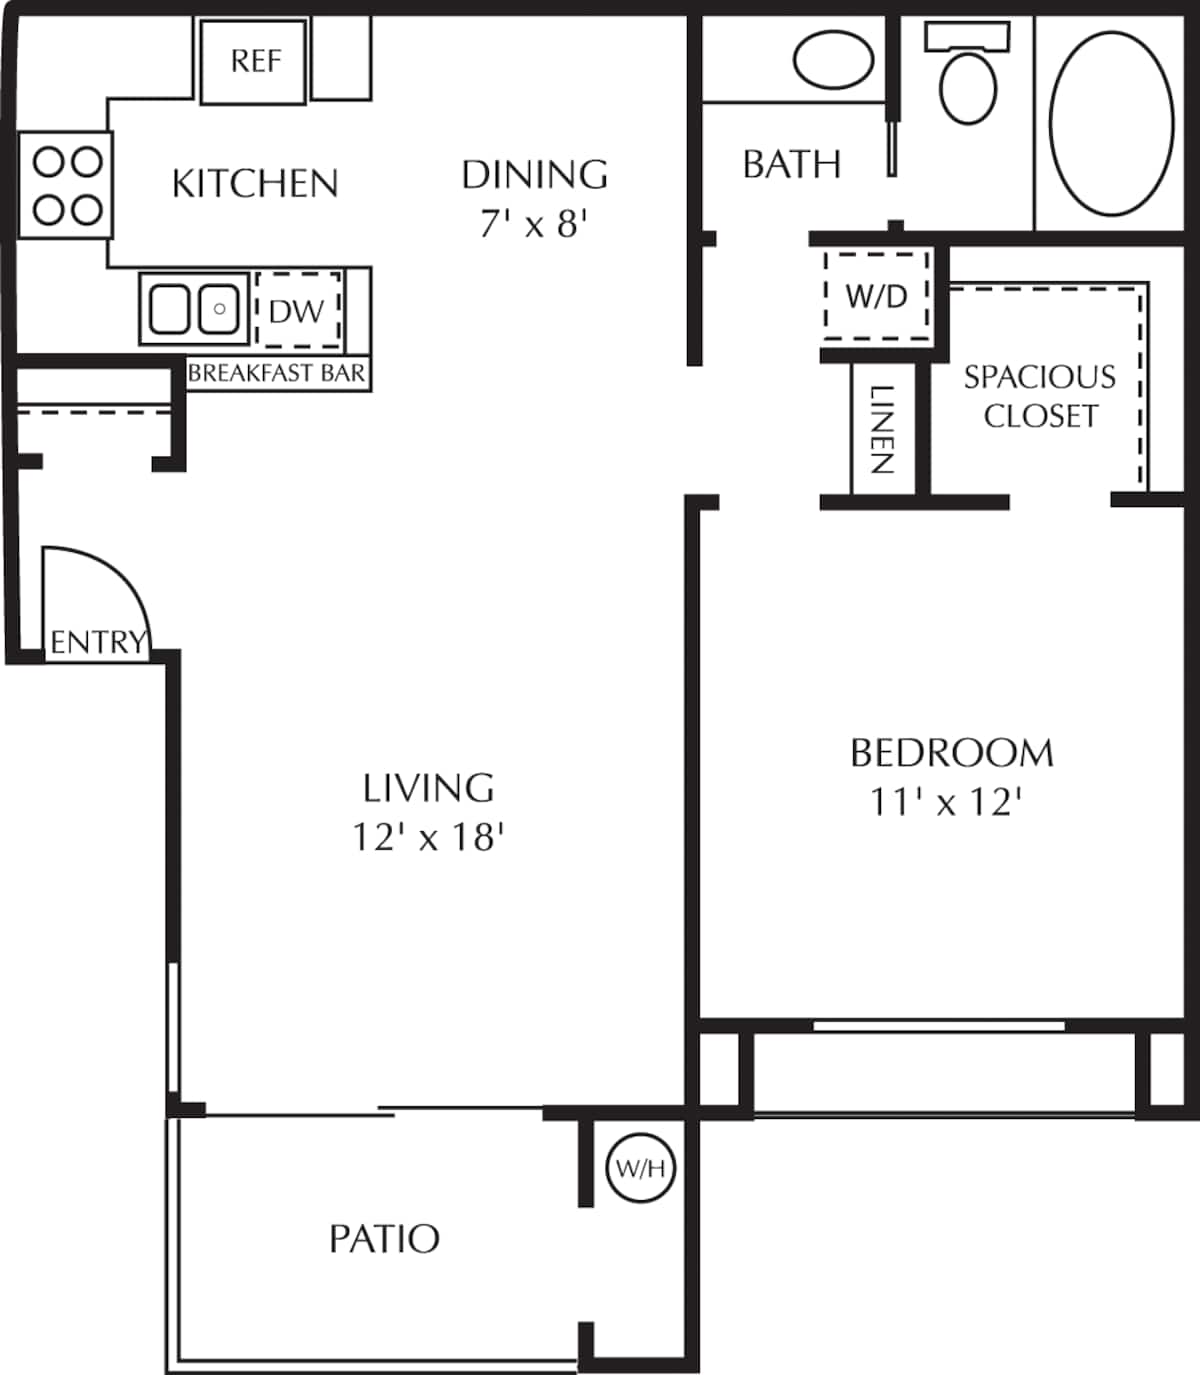 Floorplan diagram for Costa, showing 1 bedroom